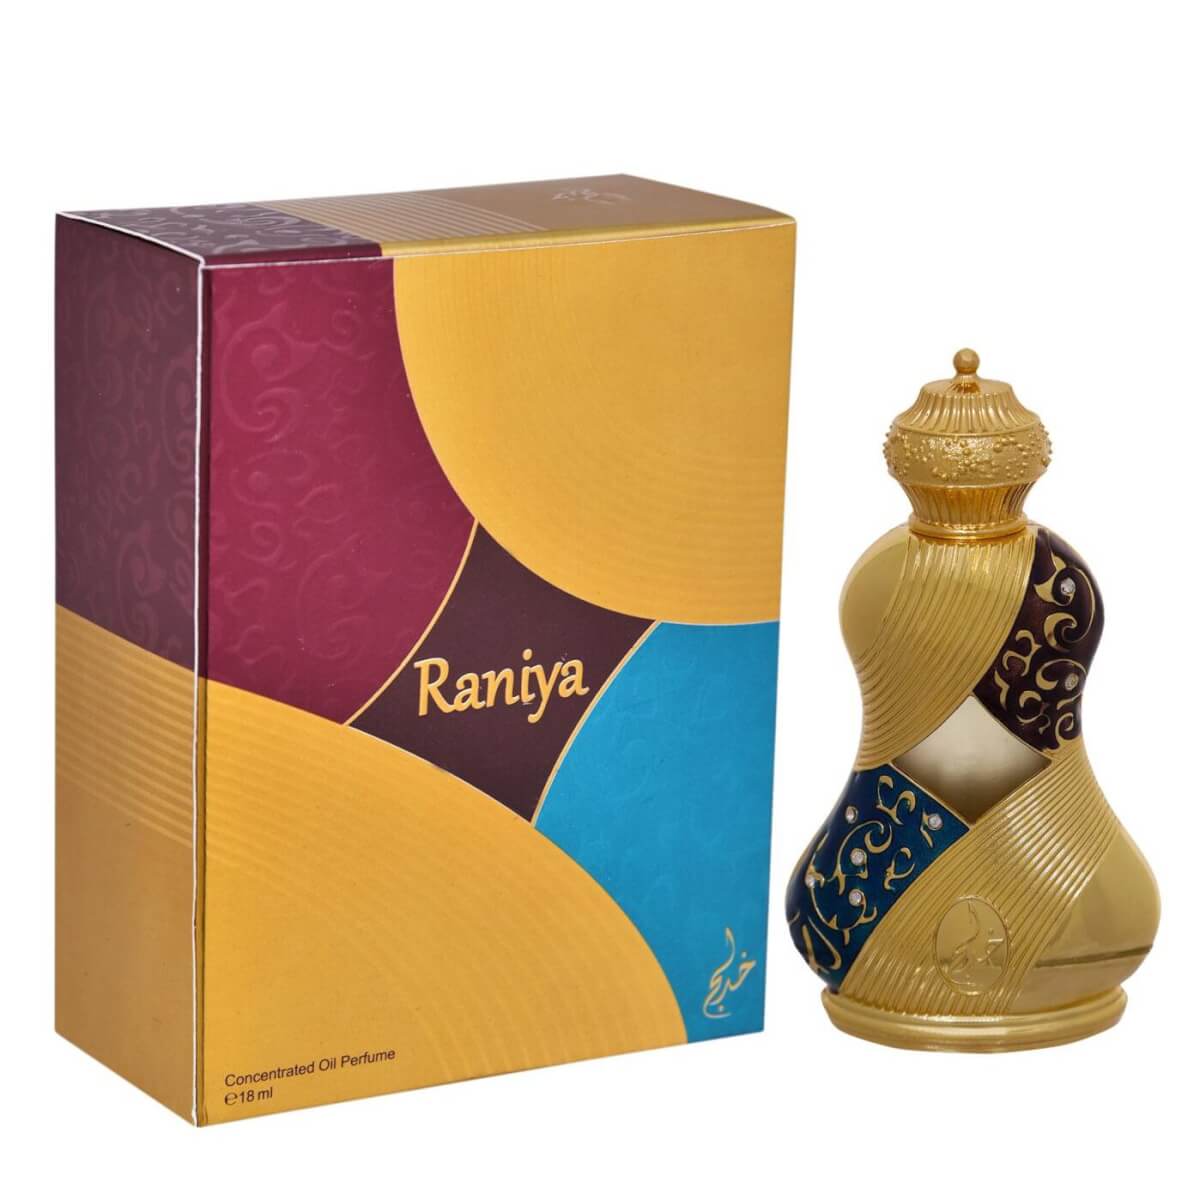 Raniya Concentrated Perfume Oil / Attar 18Ml By Khadlaj